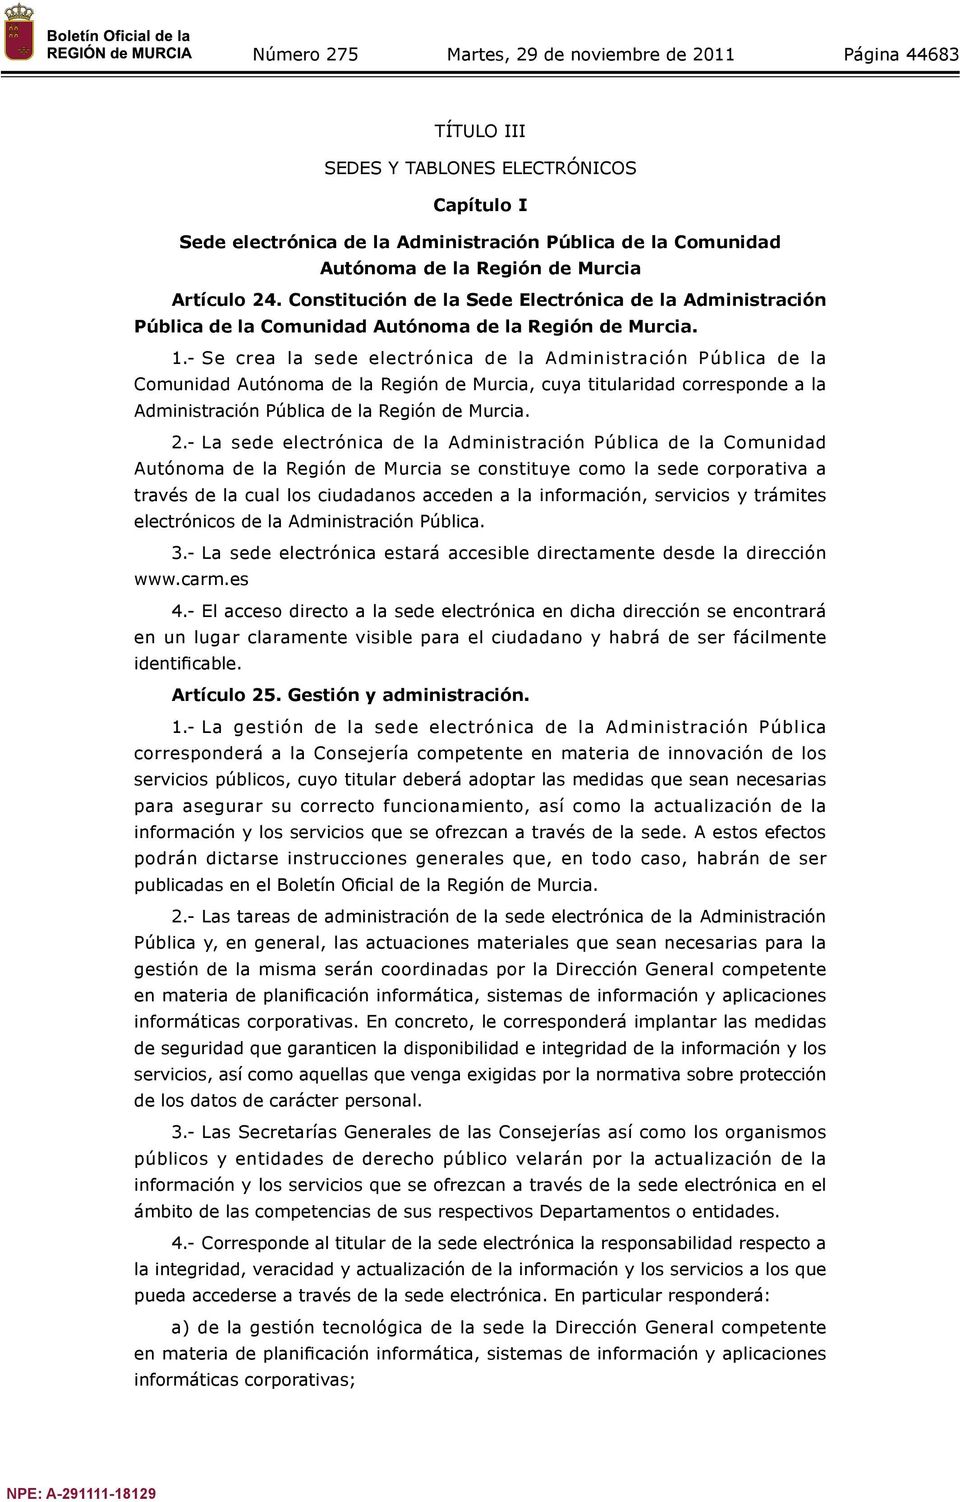 - Se crea la sede electrónica de la Administración Pública de la Comunidad Autónoma de la Región de Murcia, cuya titularidad corresponde a la Administración Pública de la Región de Murcia. 2.